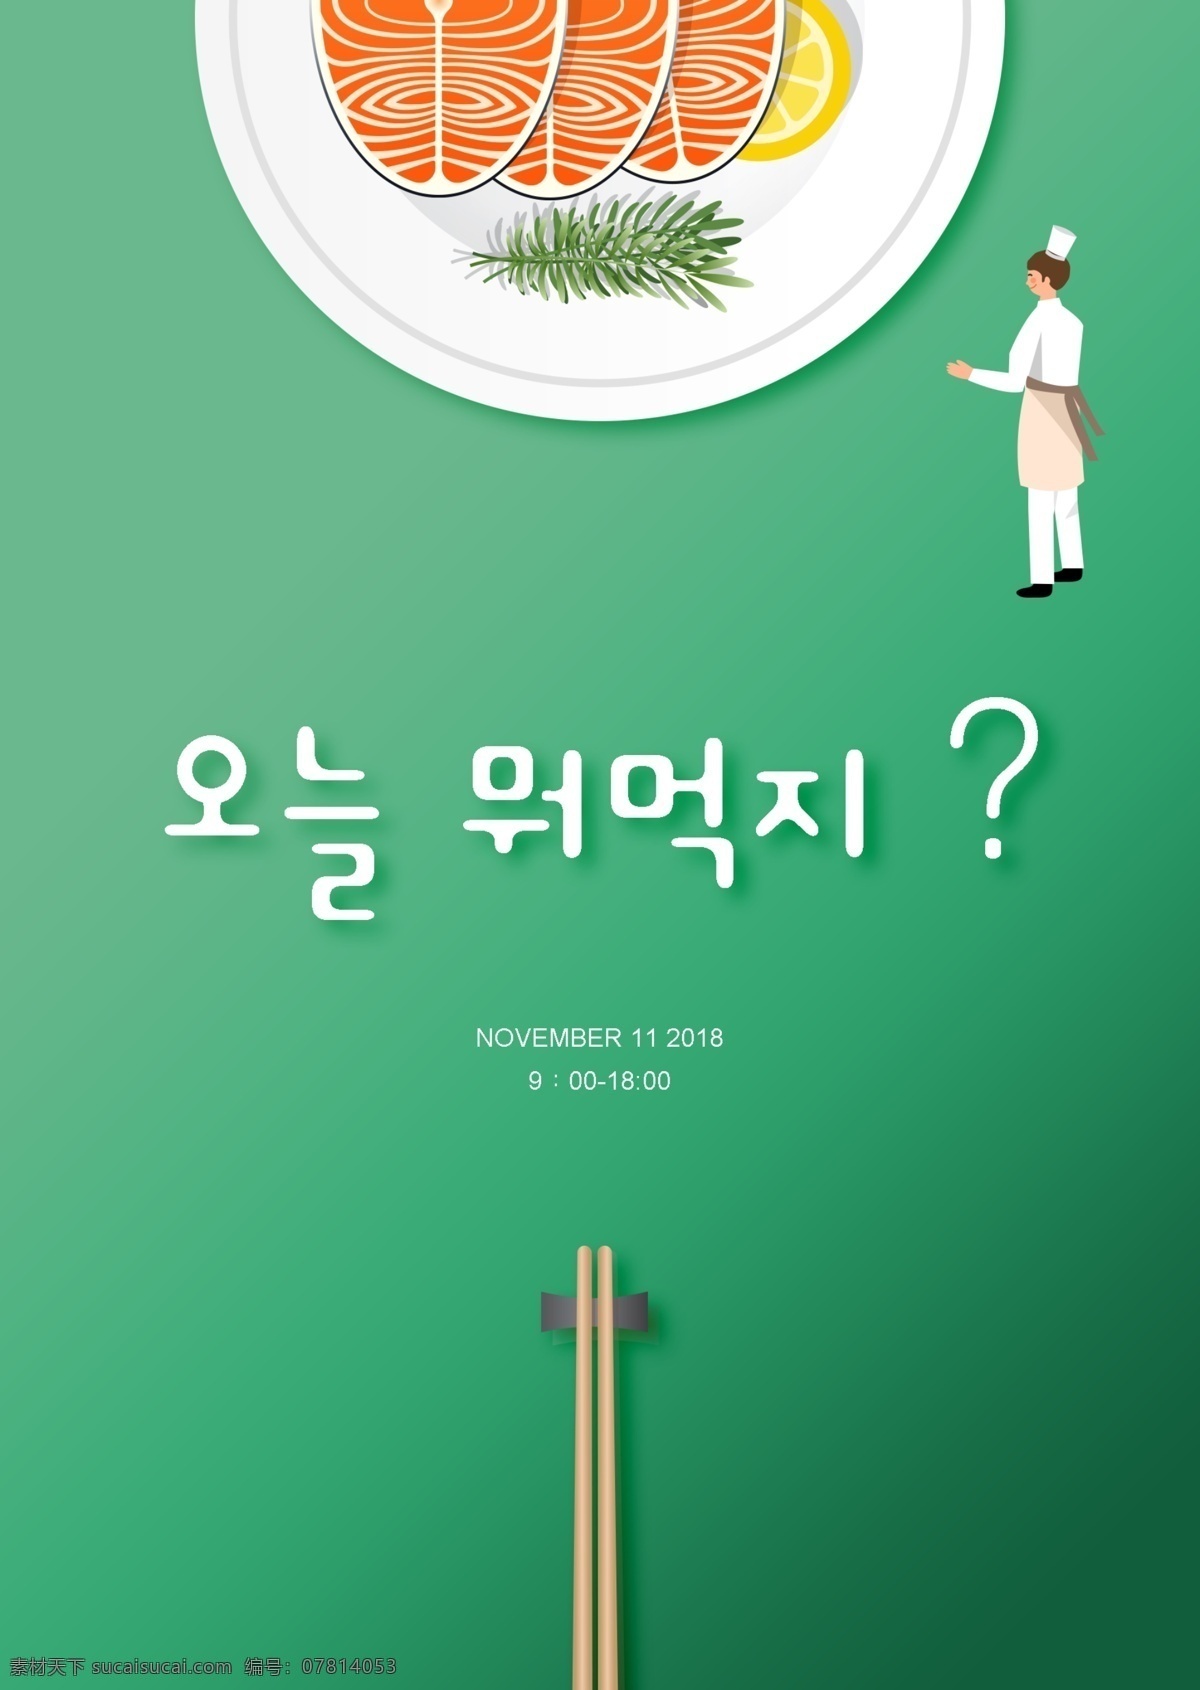 绿色 契约 韩国 一个 城市 该国 广告 托盘 中 鱼食 简单 可爱 数字 系统 三文鱼 只有一个 食物原料 食物 工作 新鲜的盒子 韩国食品广告 韩国广告托盘 白色 韩国的艺术 用鱼露 品牌宣传海报